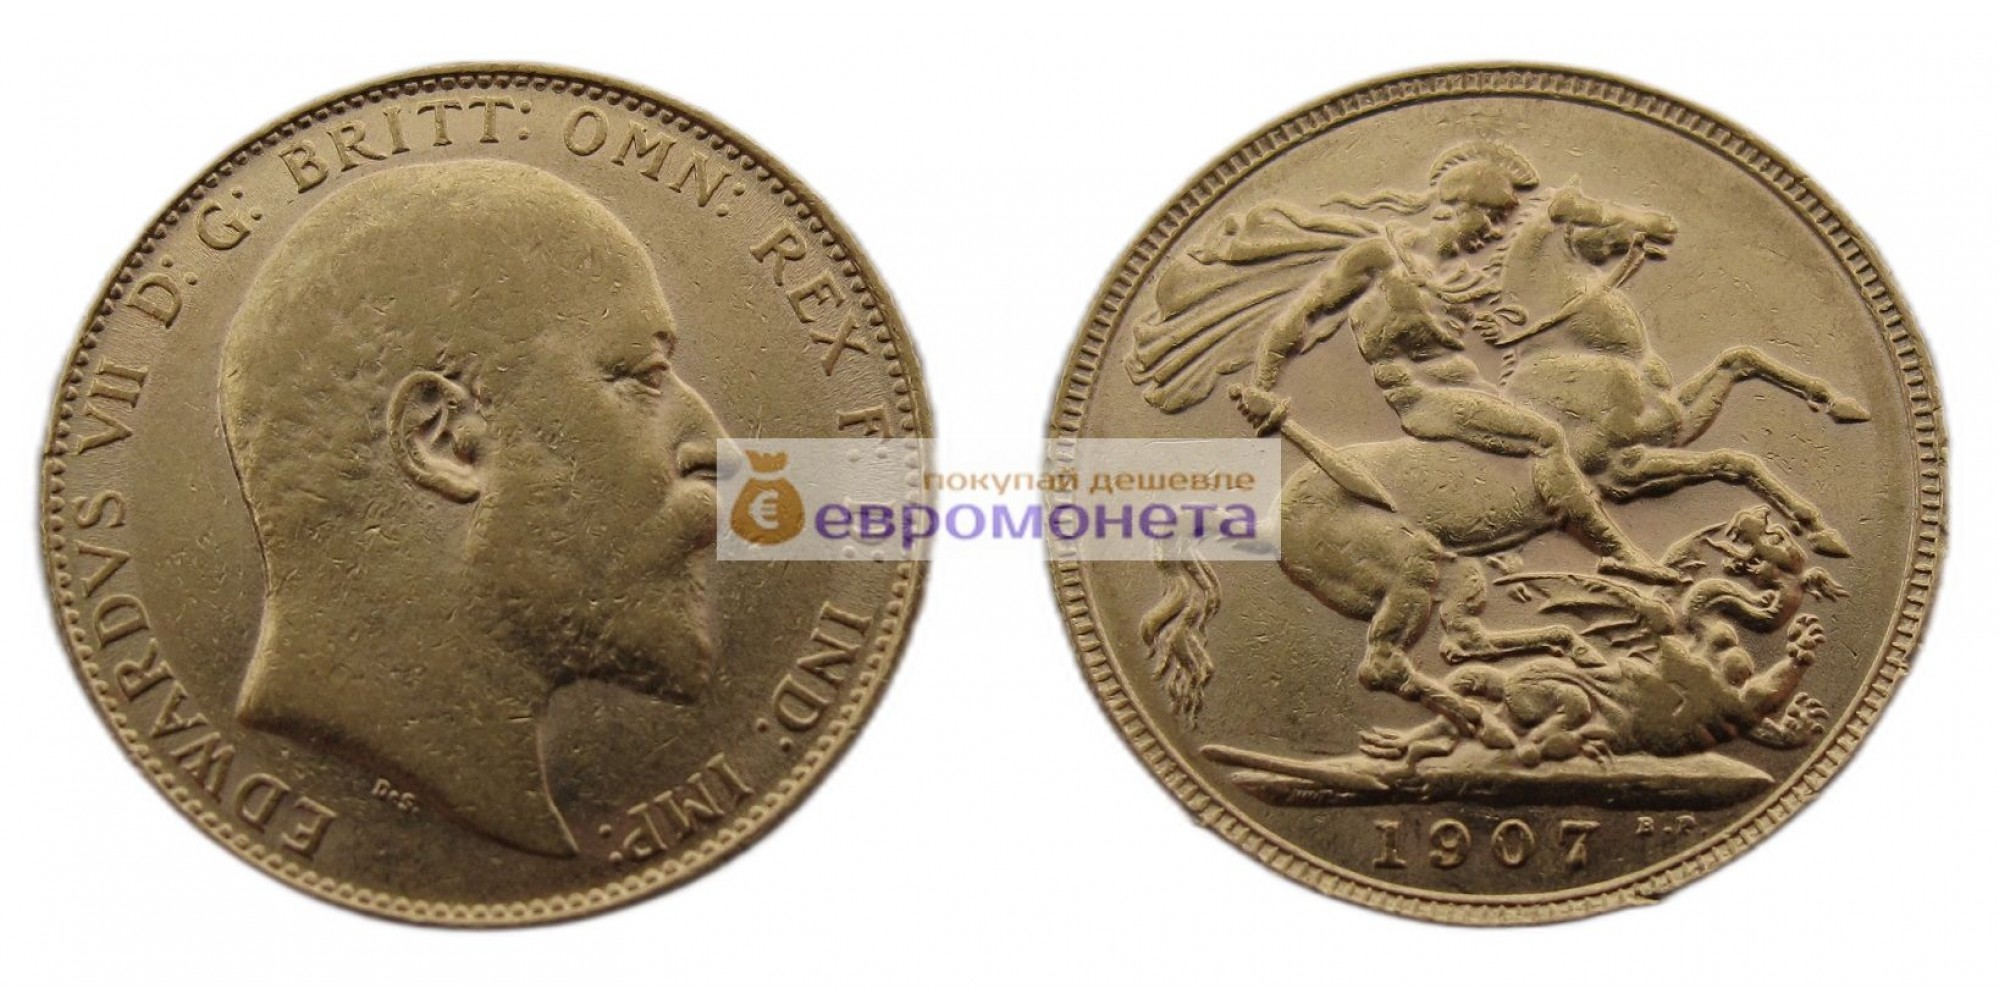 Великобритания 1 фунт (соверен) 1907 год. Король Эдуард VII. Золото